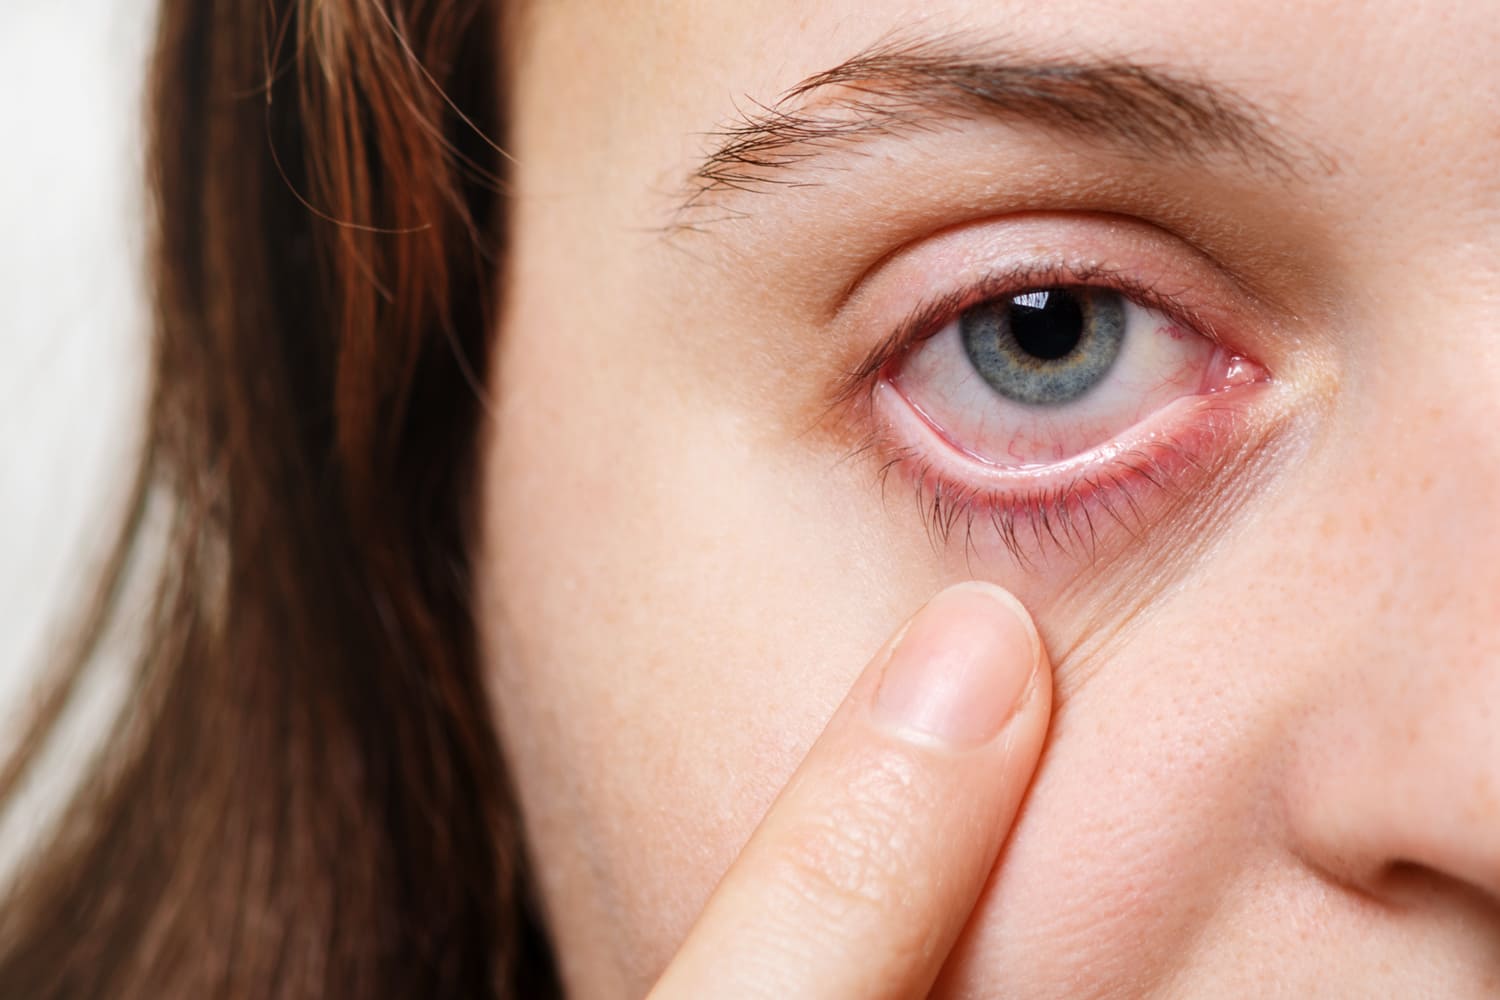 espondiloartritis-ojos-irritados-dolor-no-solo-en-articulaciones